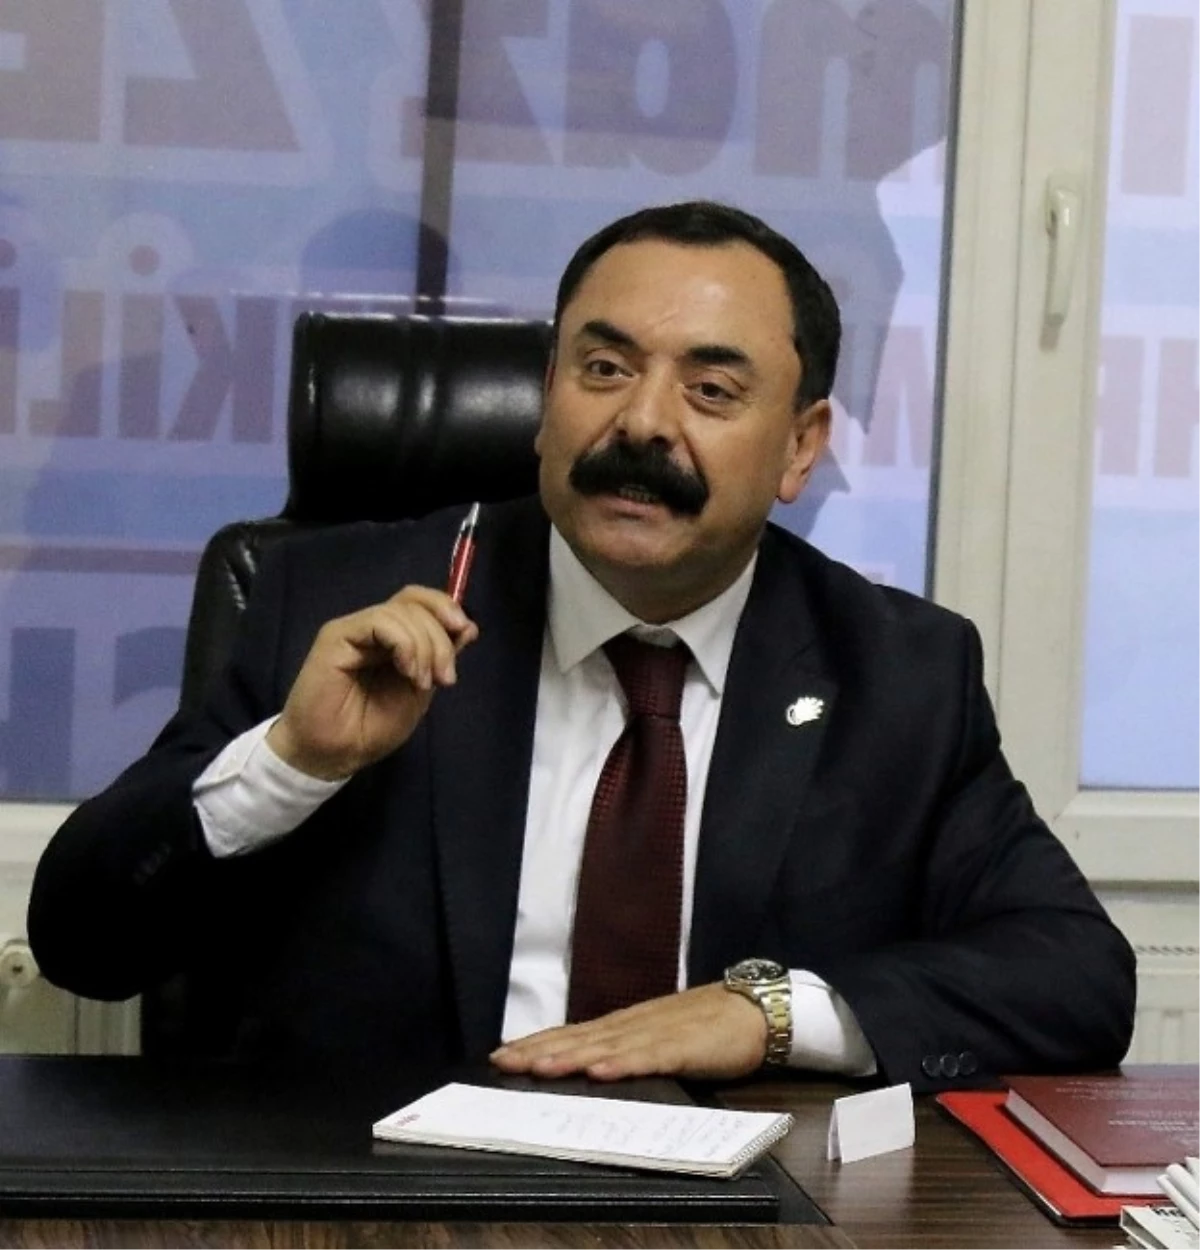 CHP İl Başkanı Yılmaz Zengin: "Hukuk Zalimleşmemeli"